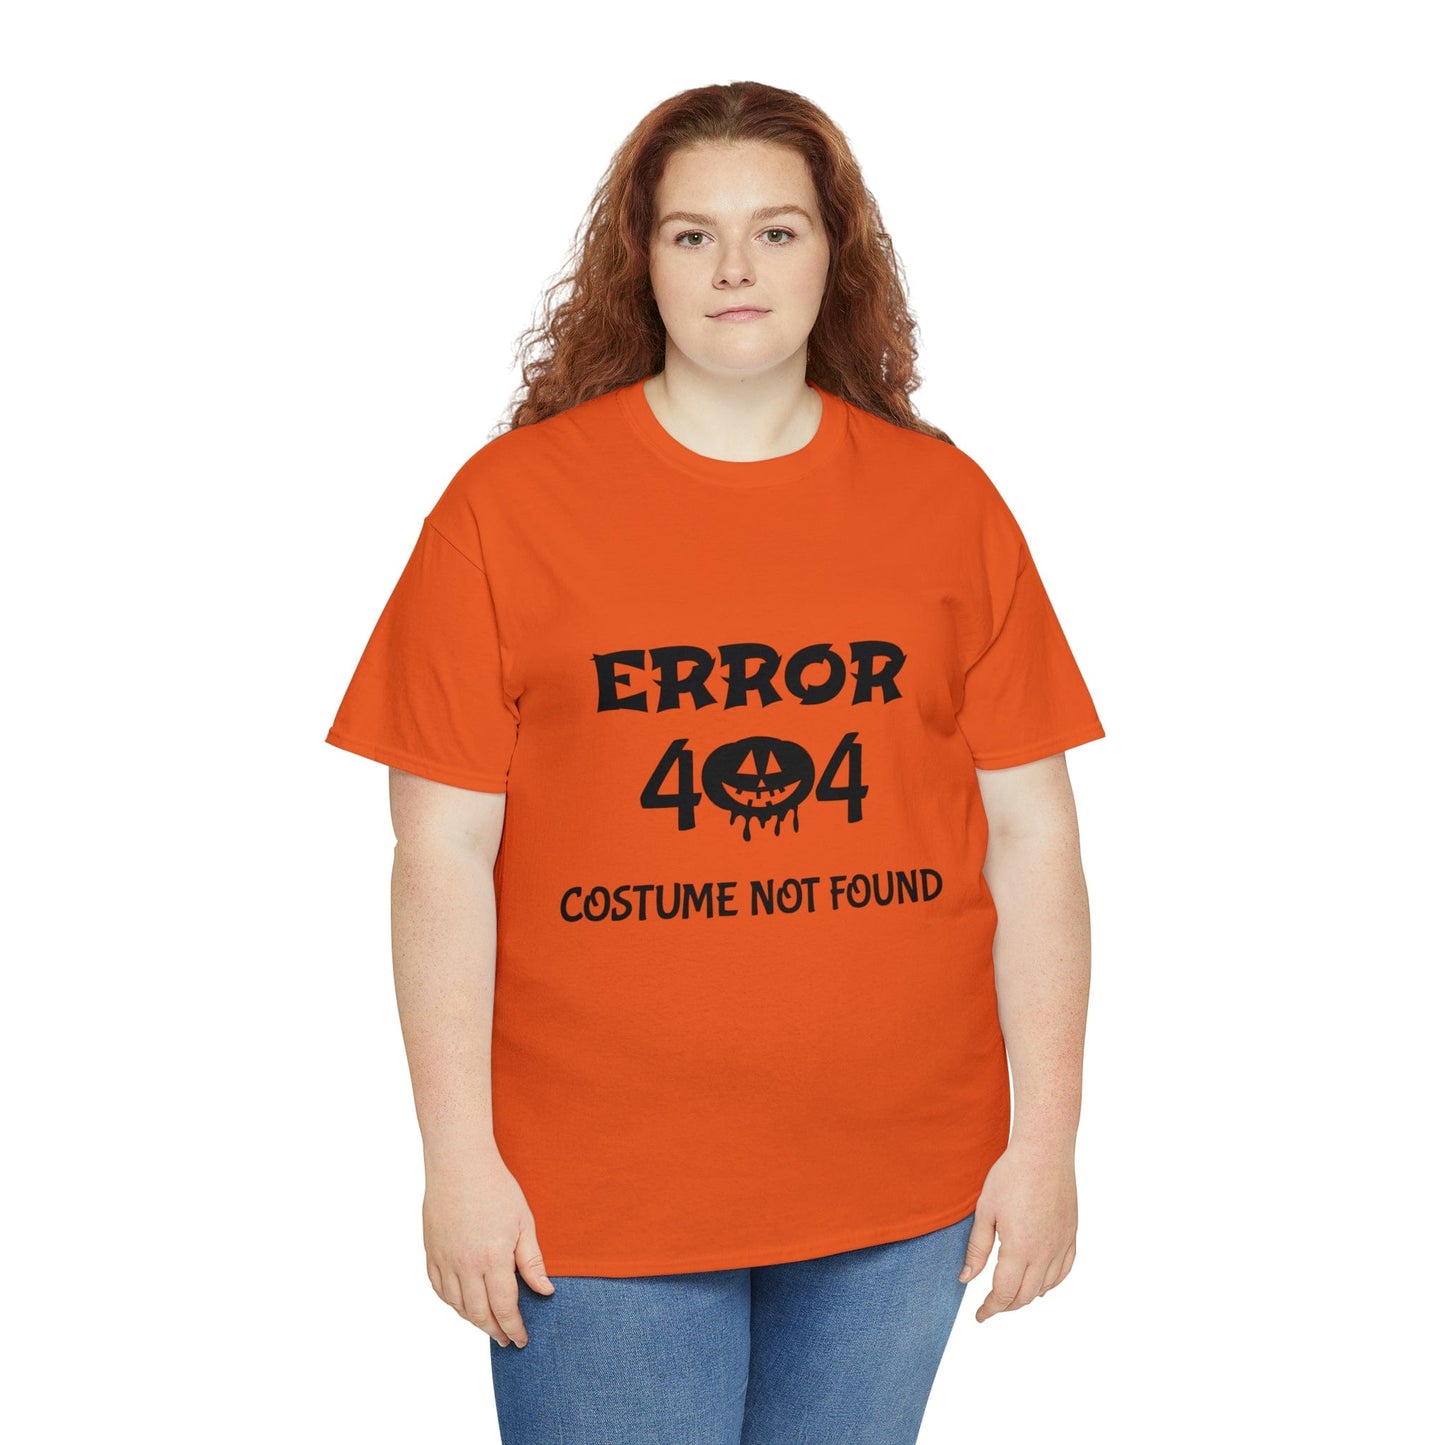 ERROR 404 Costume Not Found - Orange